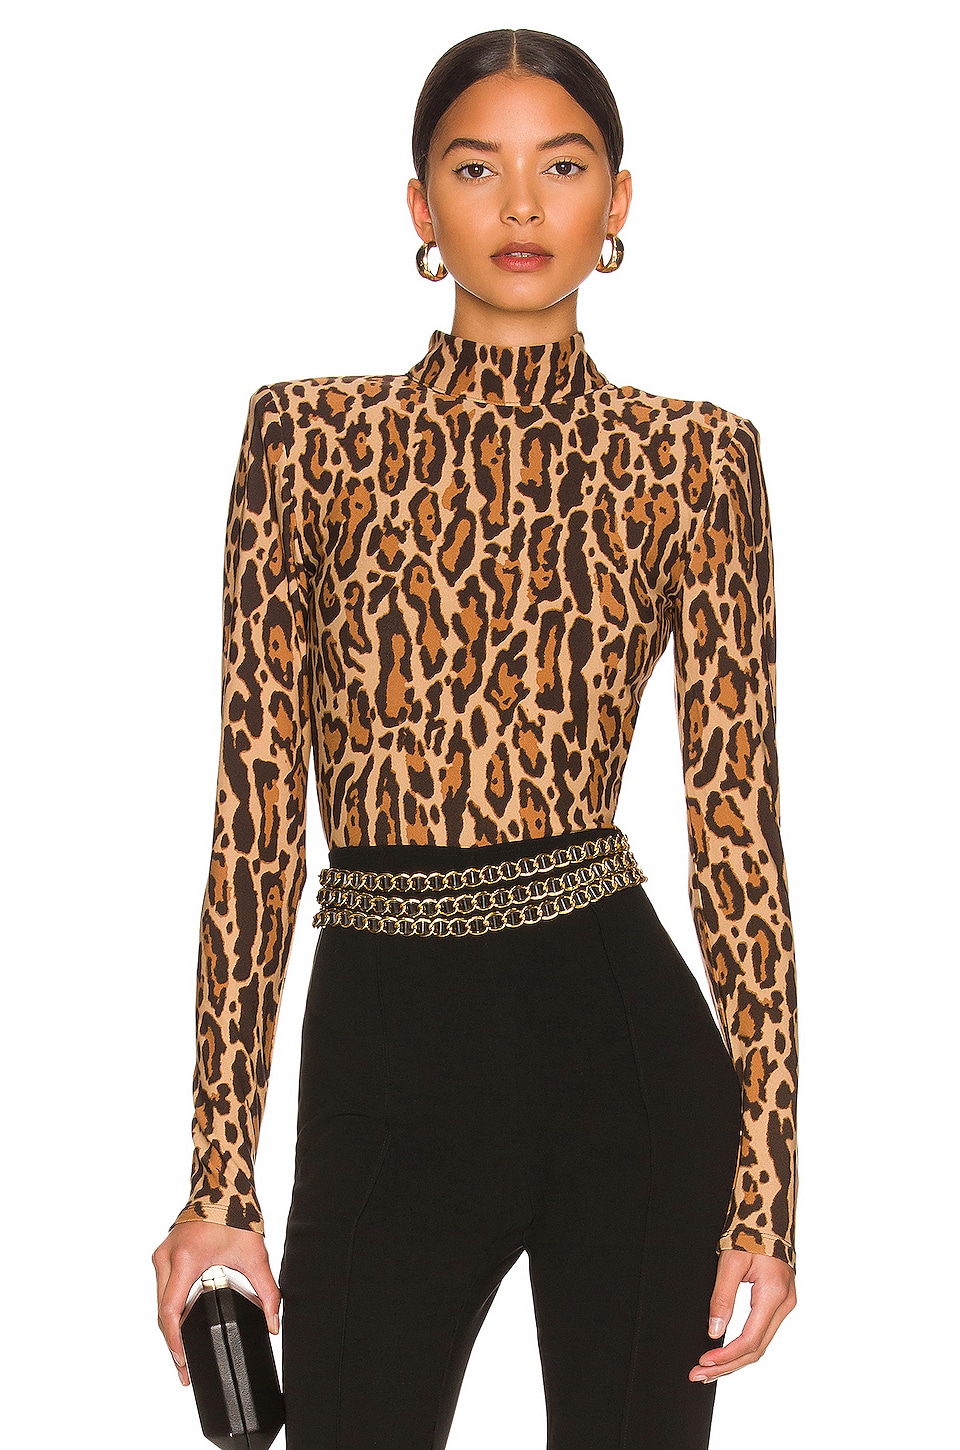 Model wearing a leopard print bodysuit